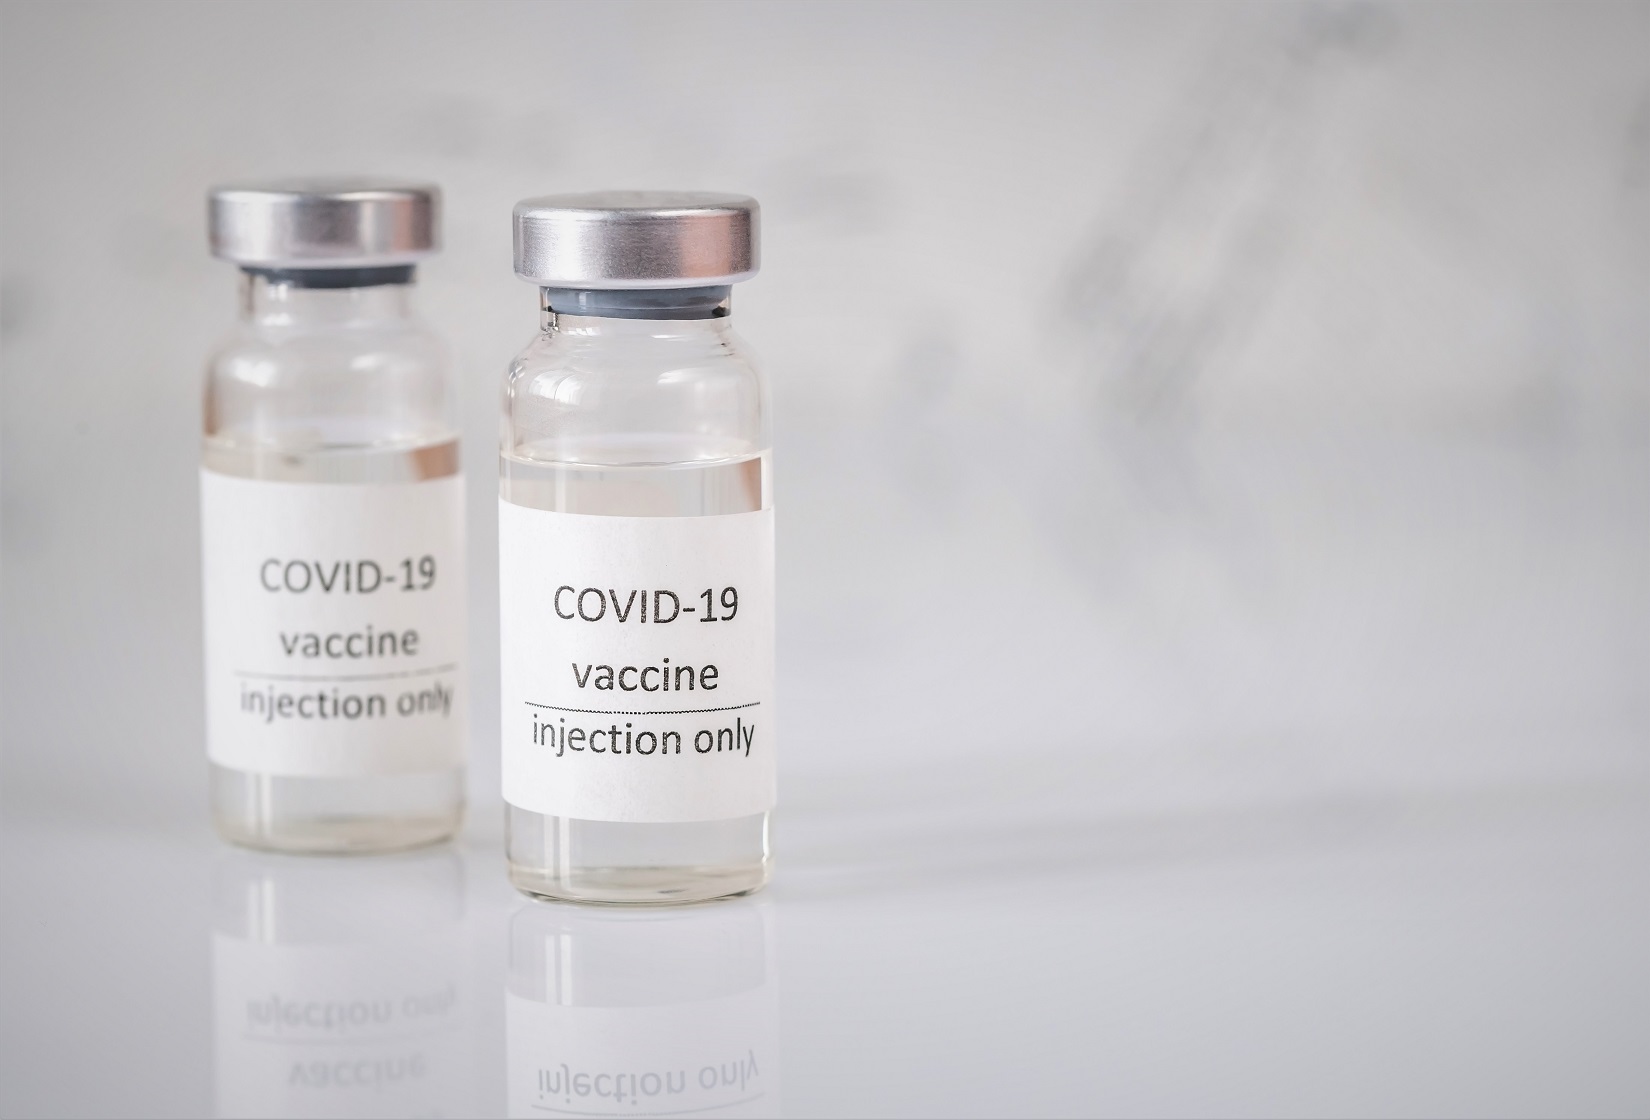 coronavirus vaccine YBG7VYA иммунизация иммунизация